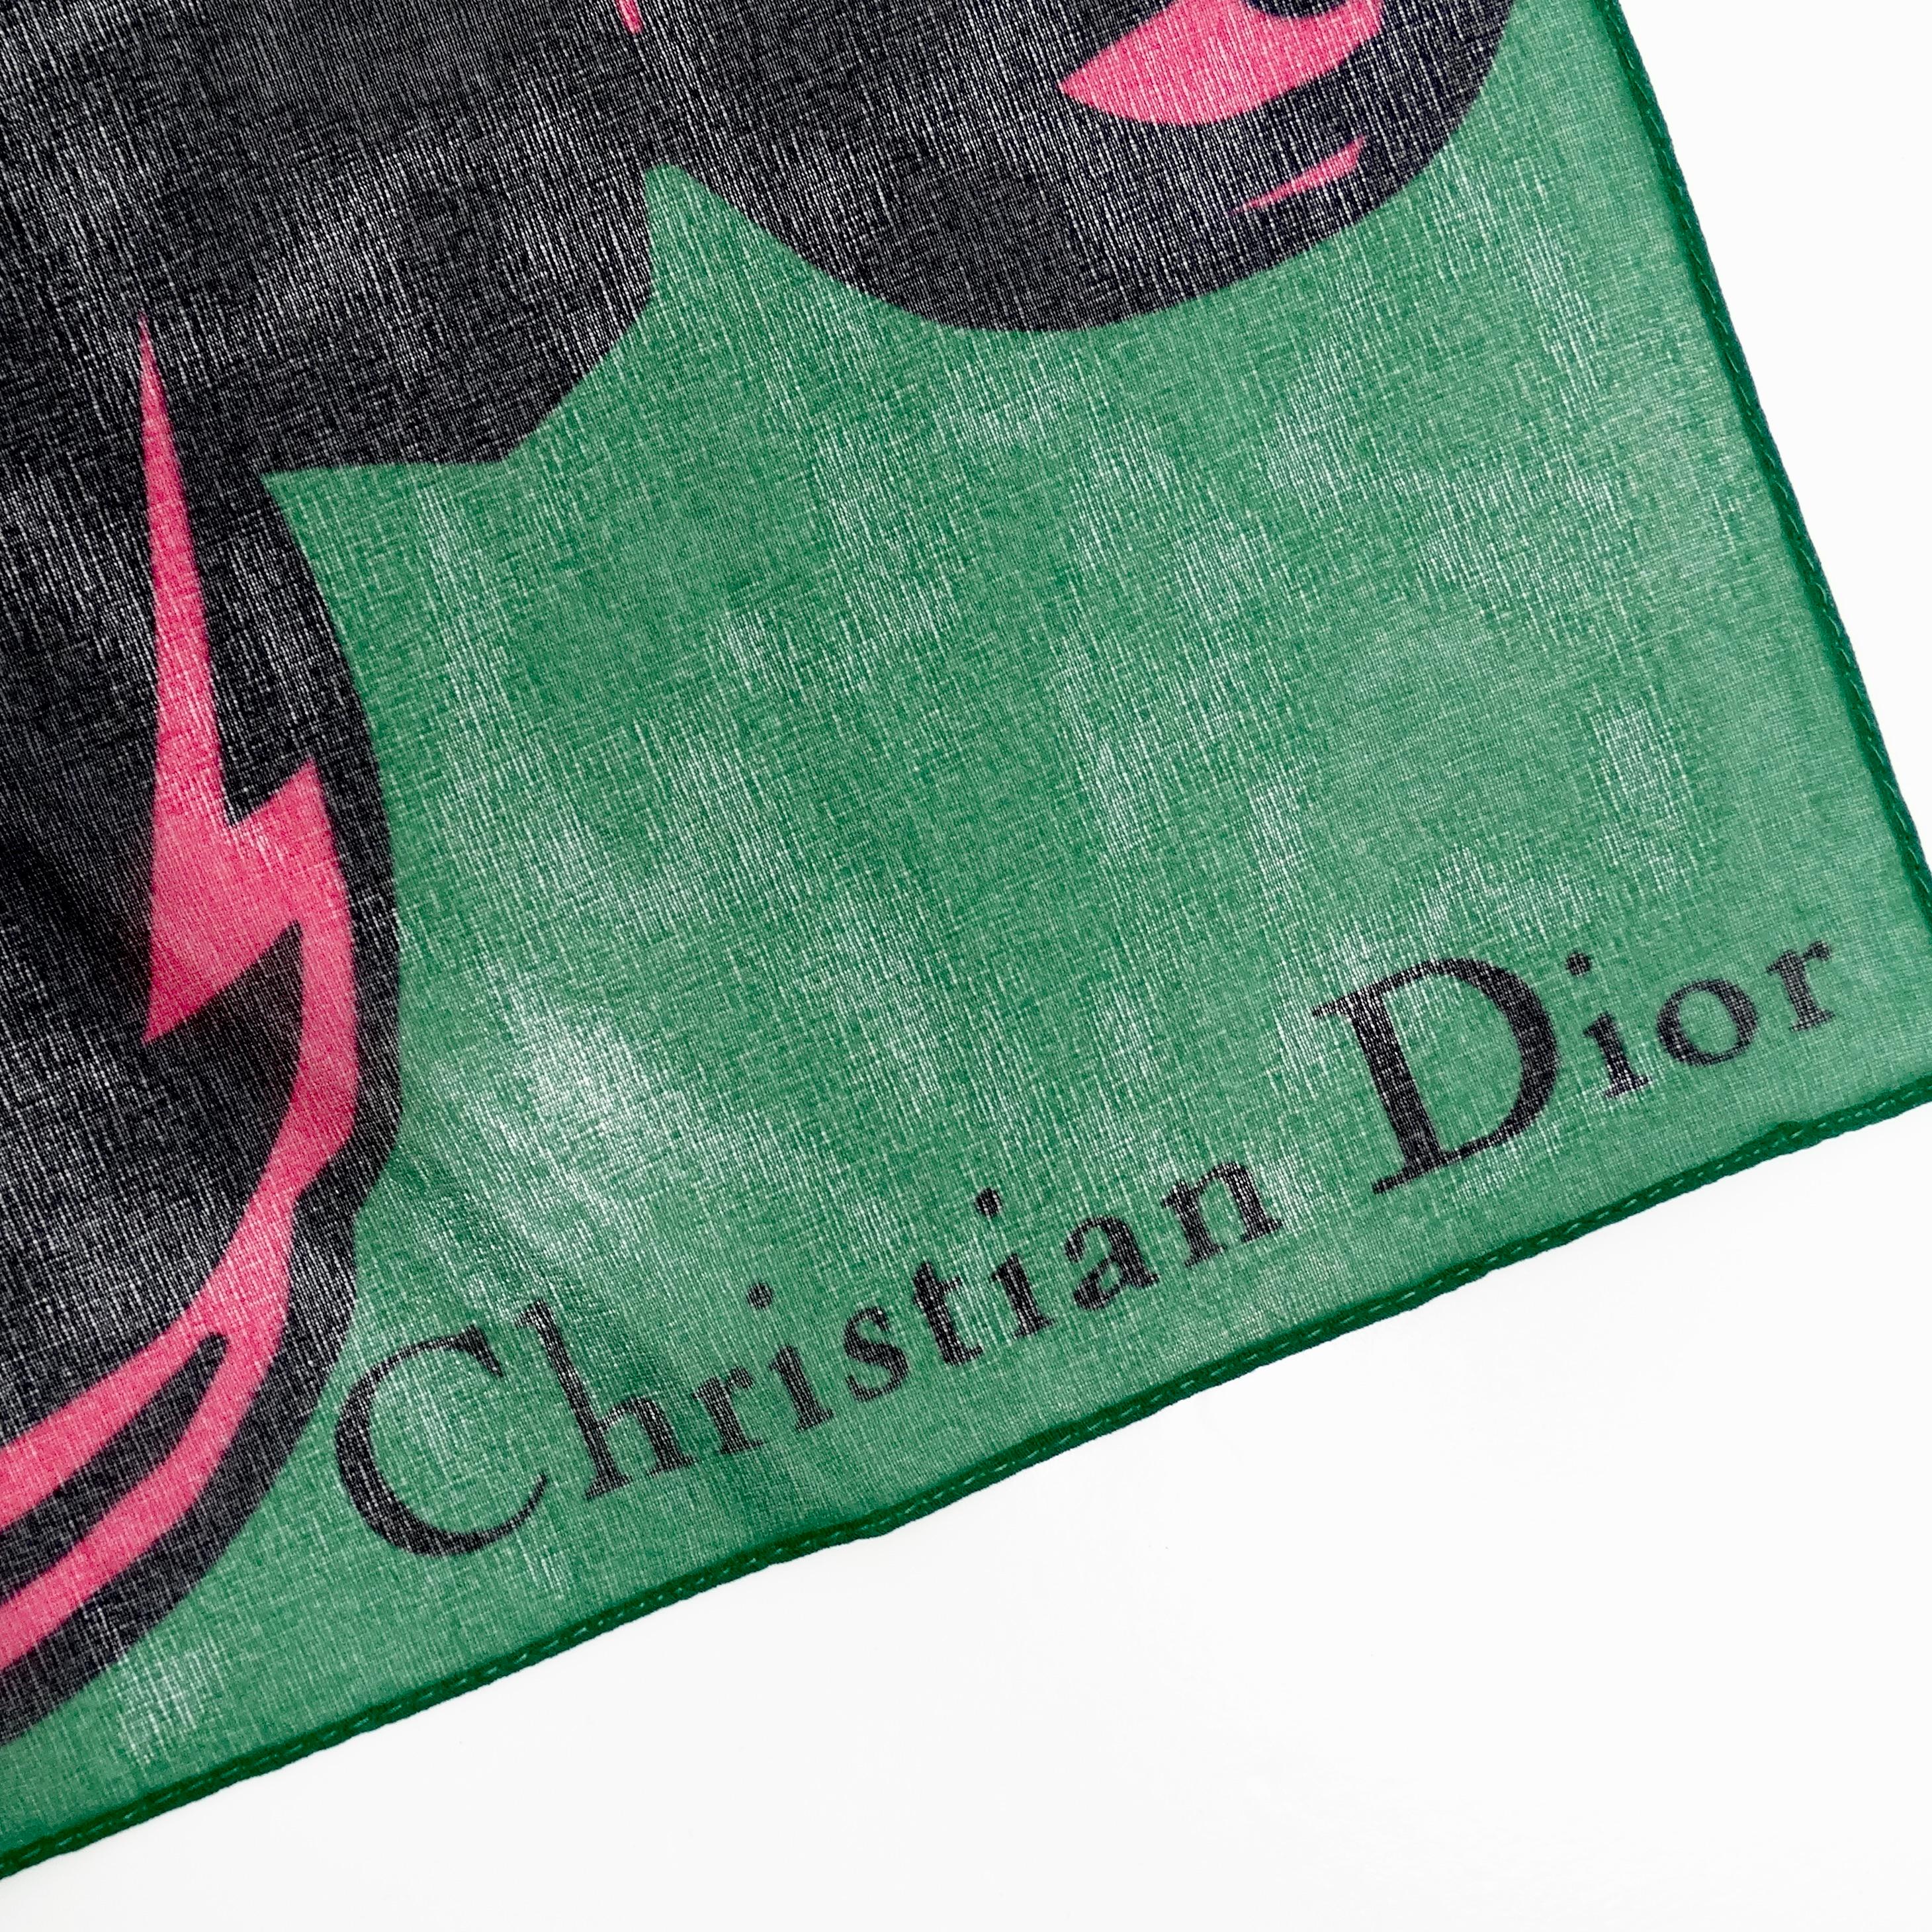 Der Christian Dior 1990s Poison Petite Seidenschal ist ein umwerfendes Accessoire, das Eleganz und Raffinesse ausstrahlt. Diese zierliche Krawatte oder das Einstecktuch aus luxuriöser Seide wird Ihren Look mit ihrem einzigartigen Druck und ihrem